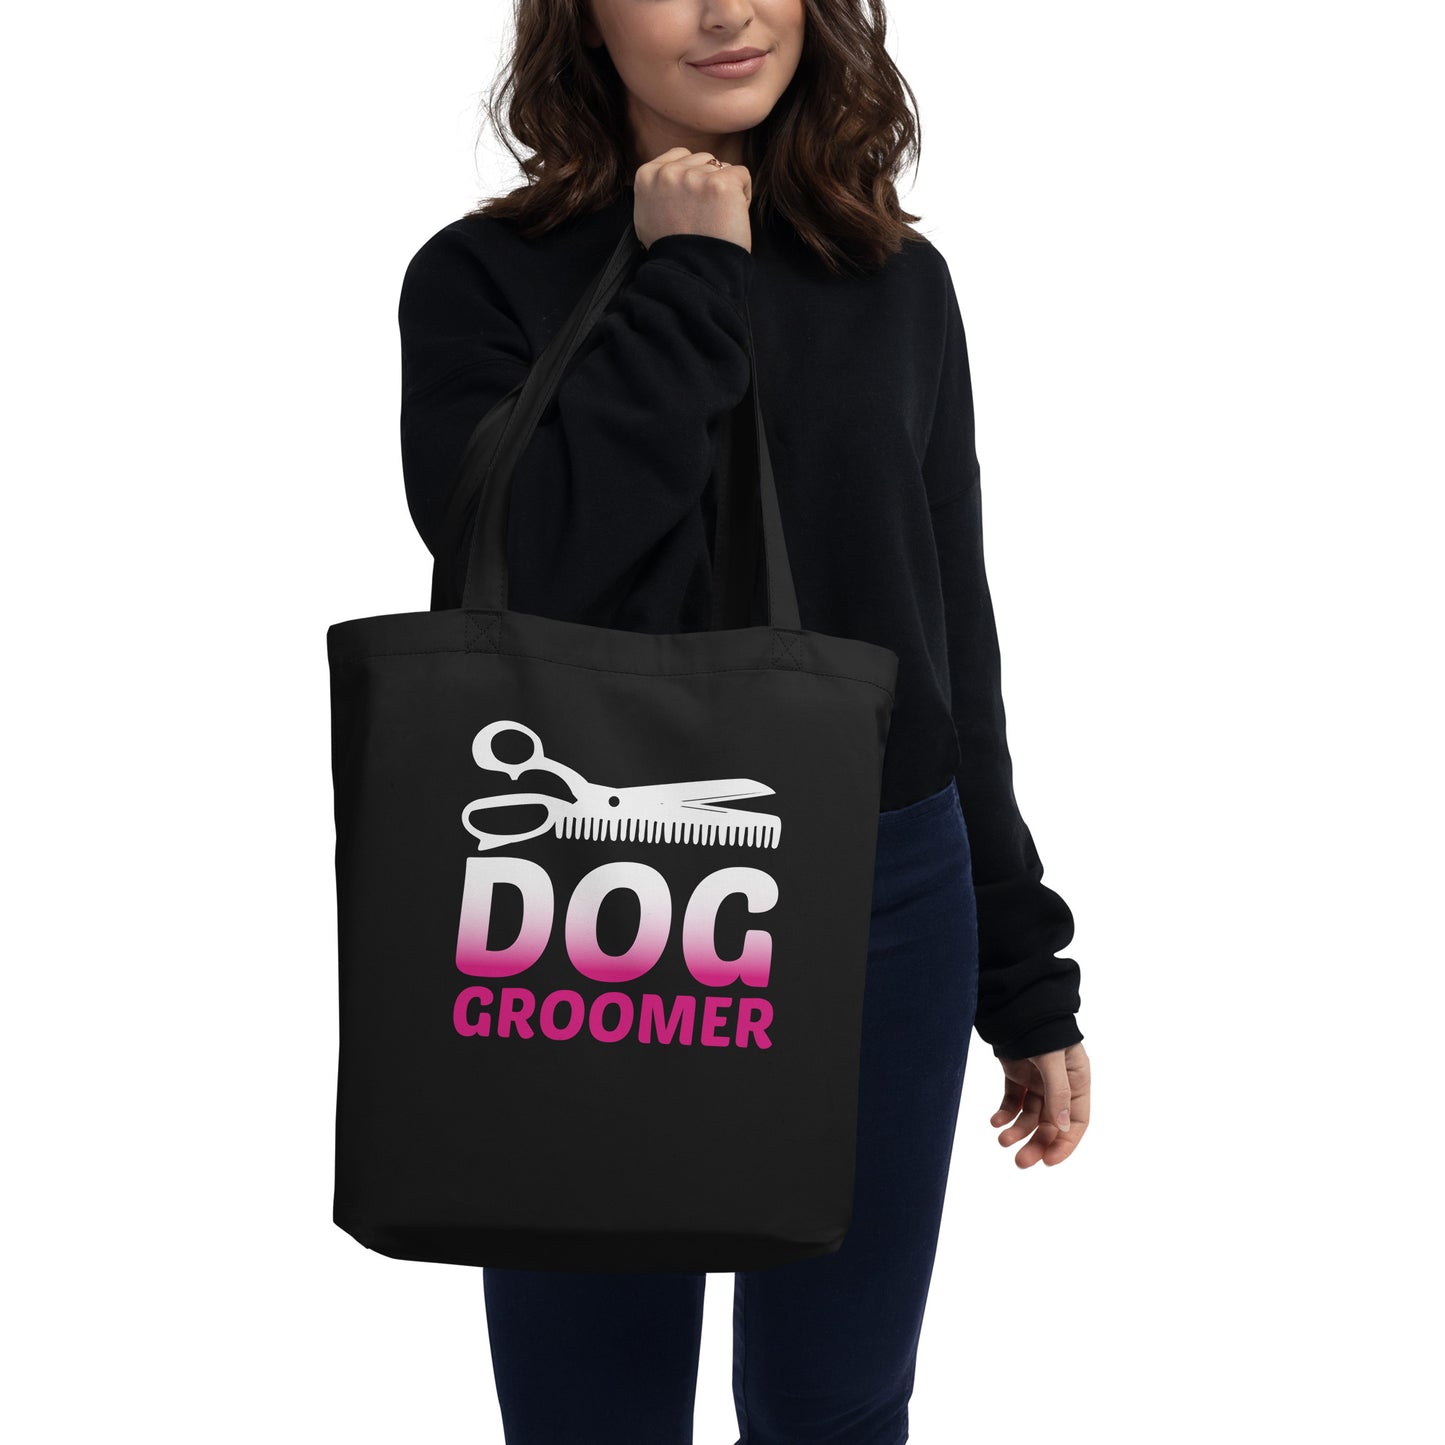 Dog Groomer Eco Tote Bag